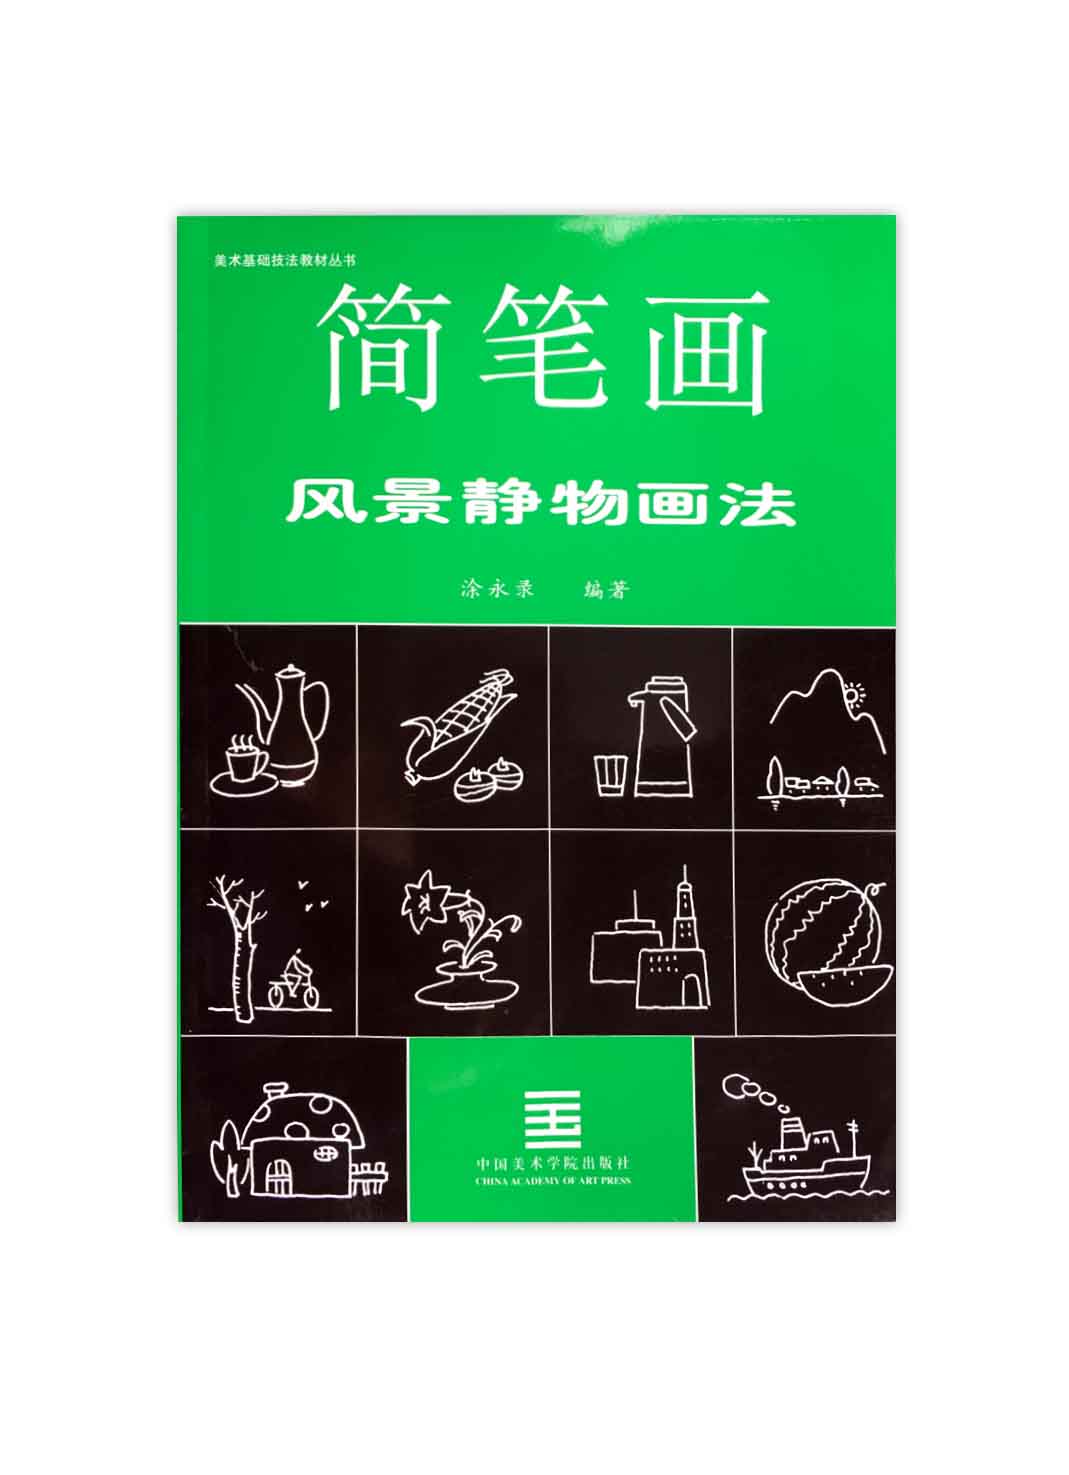 《简笔画-风景静物画法》中国美术学院 正版品牌直销 满58包邮